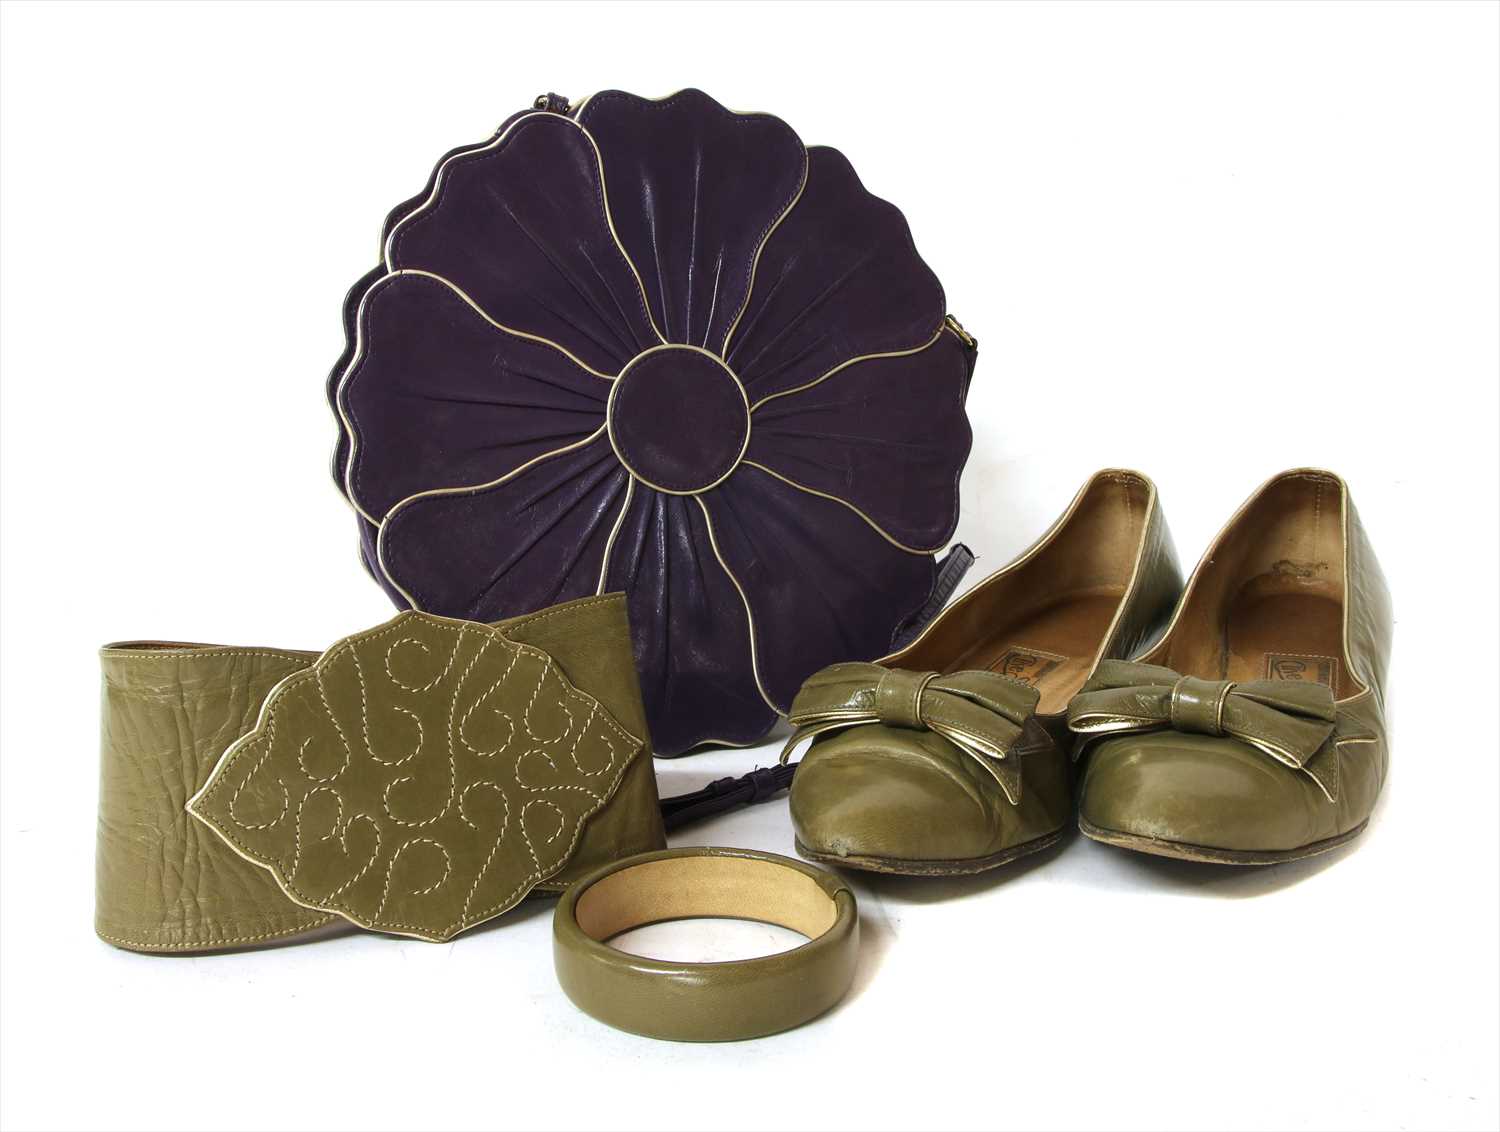 Clive Shilton khaki court shoes, khaki belt and Clive Shilton purple bag